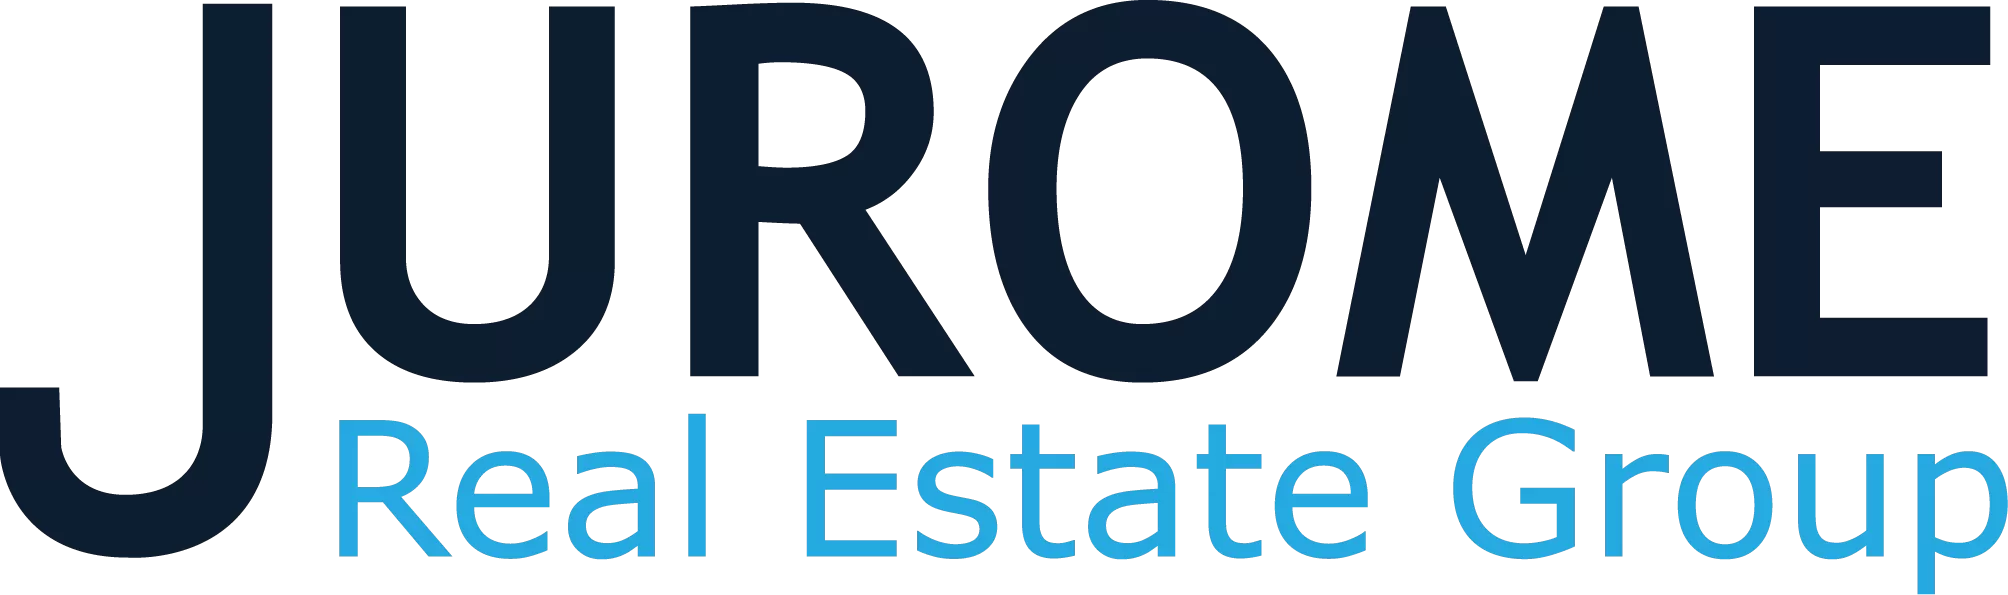 Jurome real estate logo